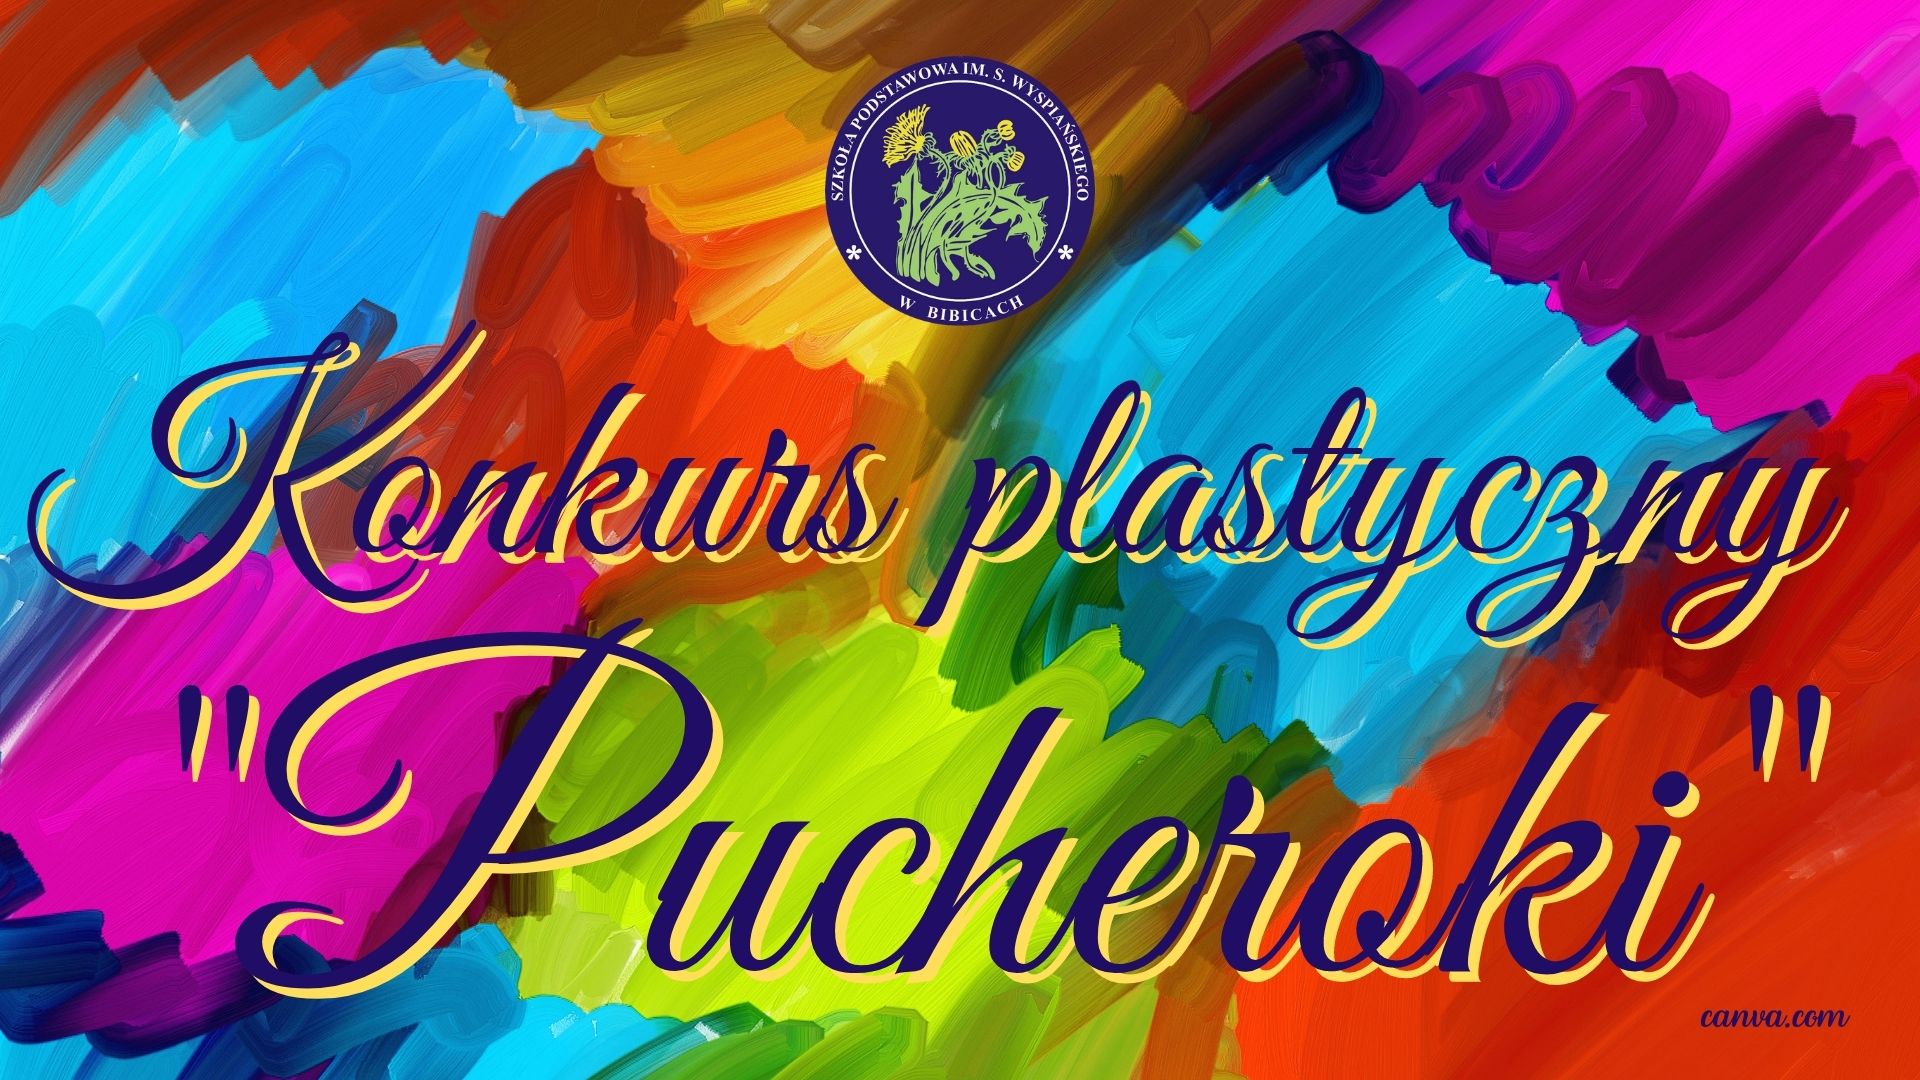 Konkurs plastyczny “Pucheroki